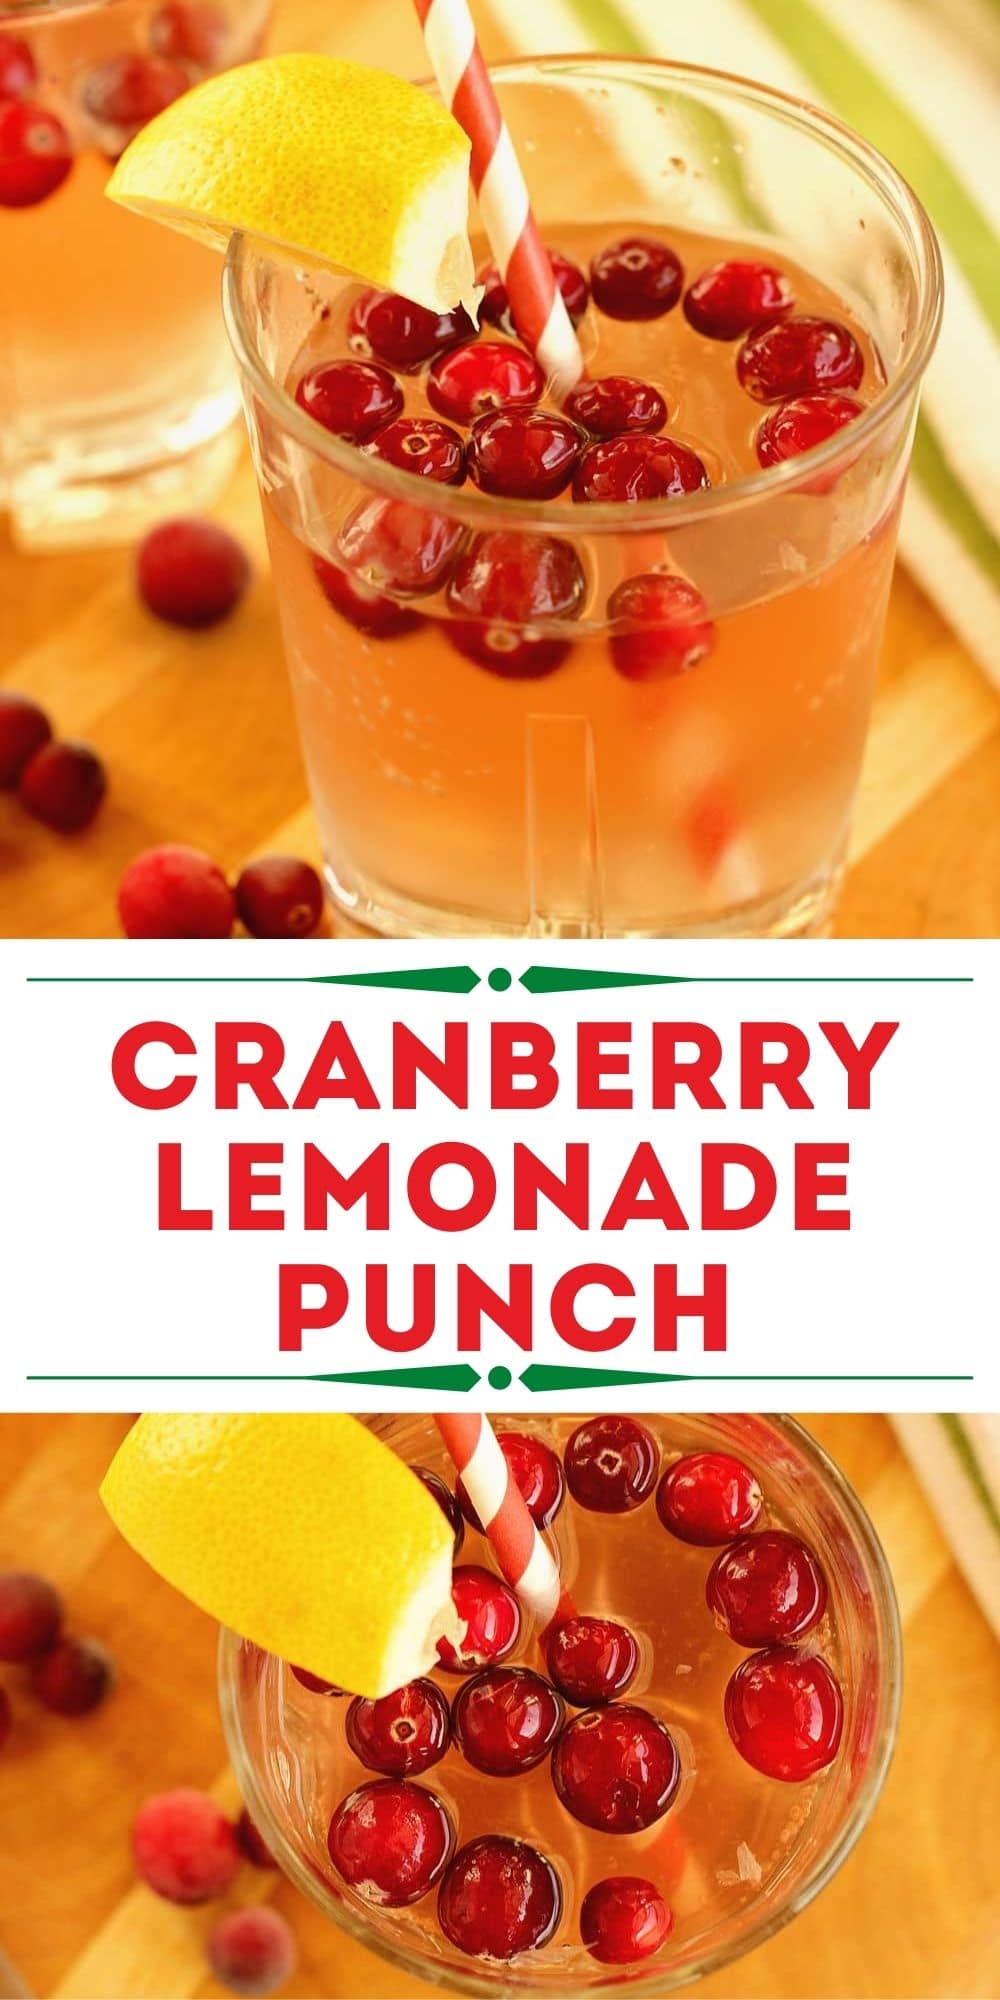 https://www.diaryofarecipecollector.com/wp-content/uploads/2020/12/cranberry-lemonade-punch.jpg